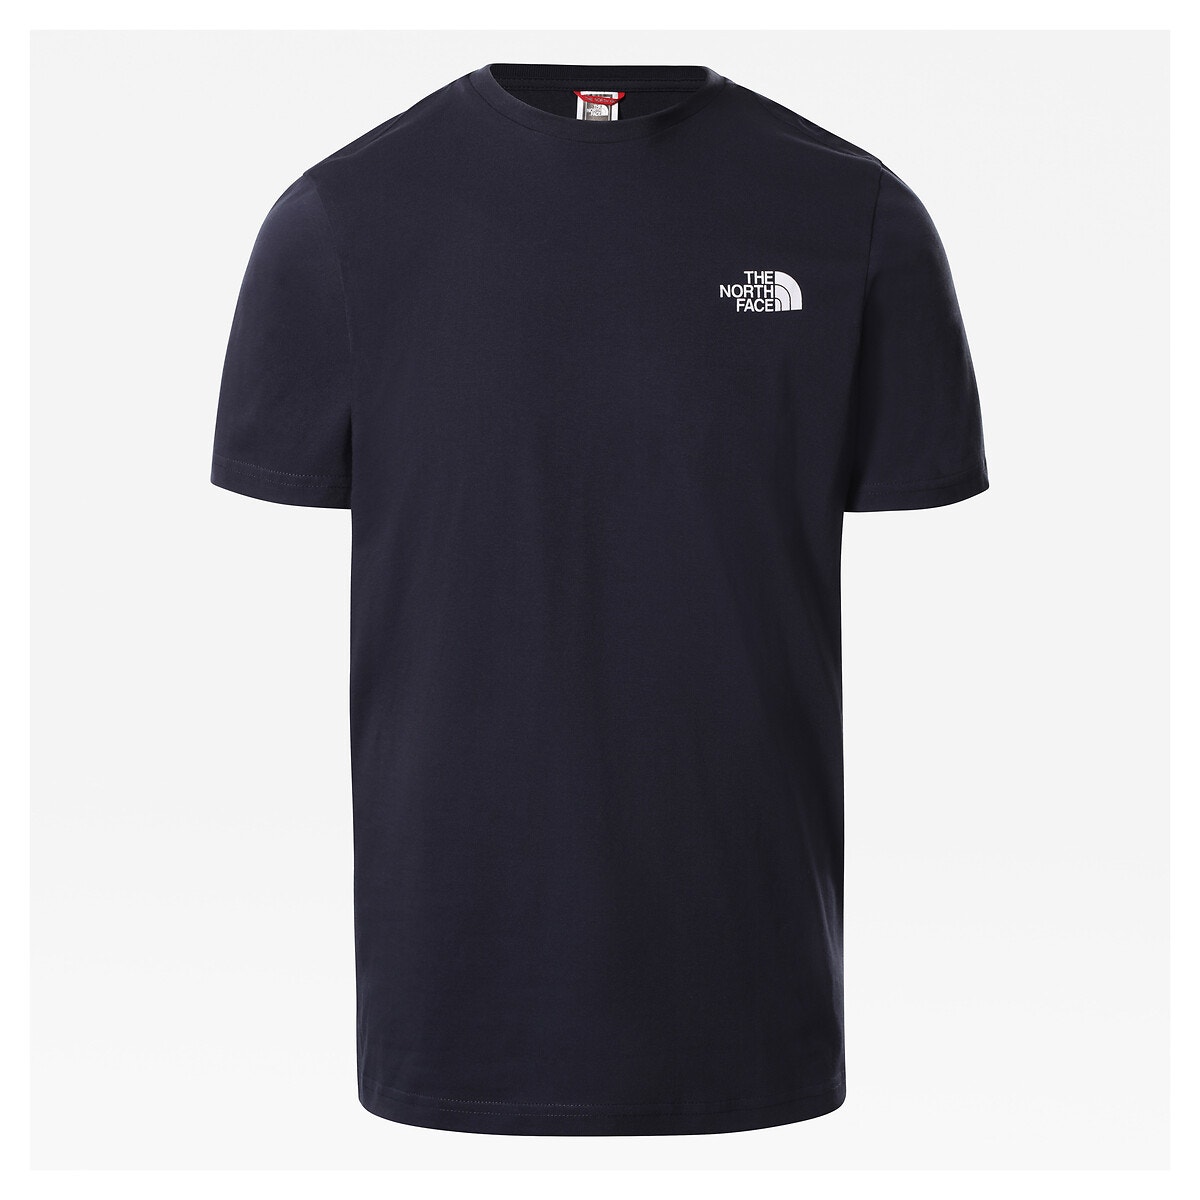 ΑΝΔΡΑΣ | Μπλούζες & Πουκάμισα | T-shirts Κοντομάνικο T-shirt, Simple Dome